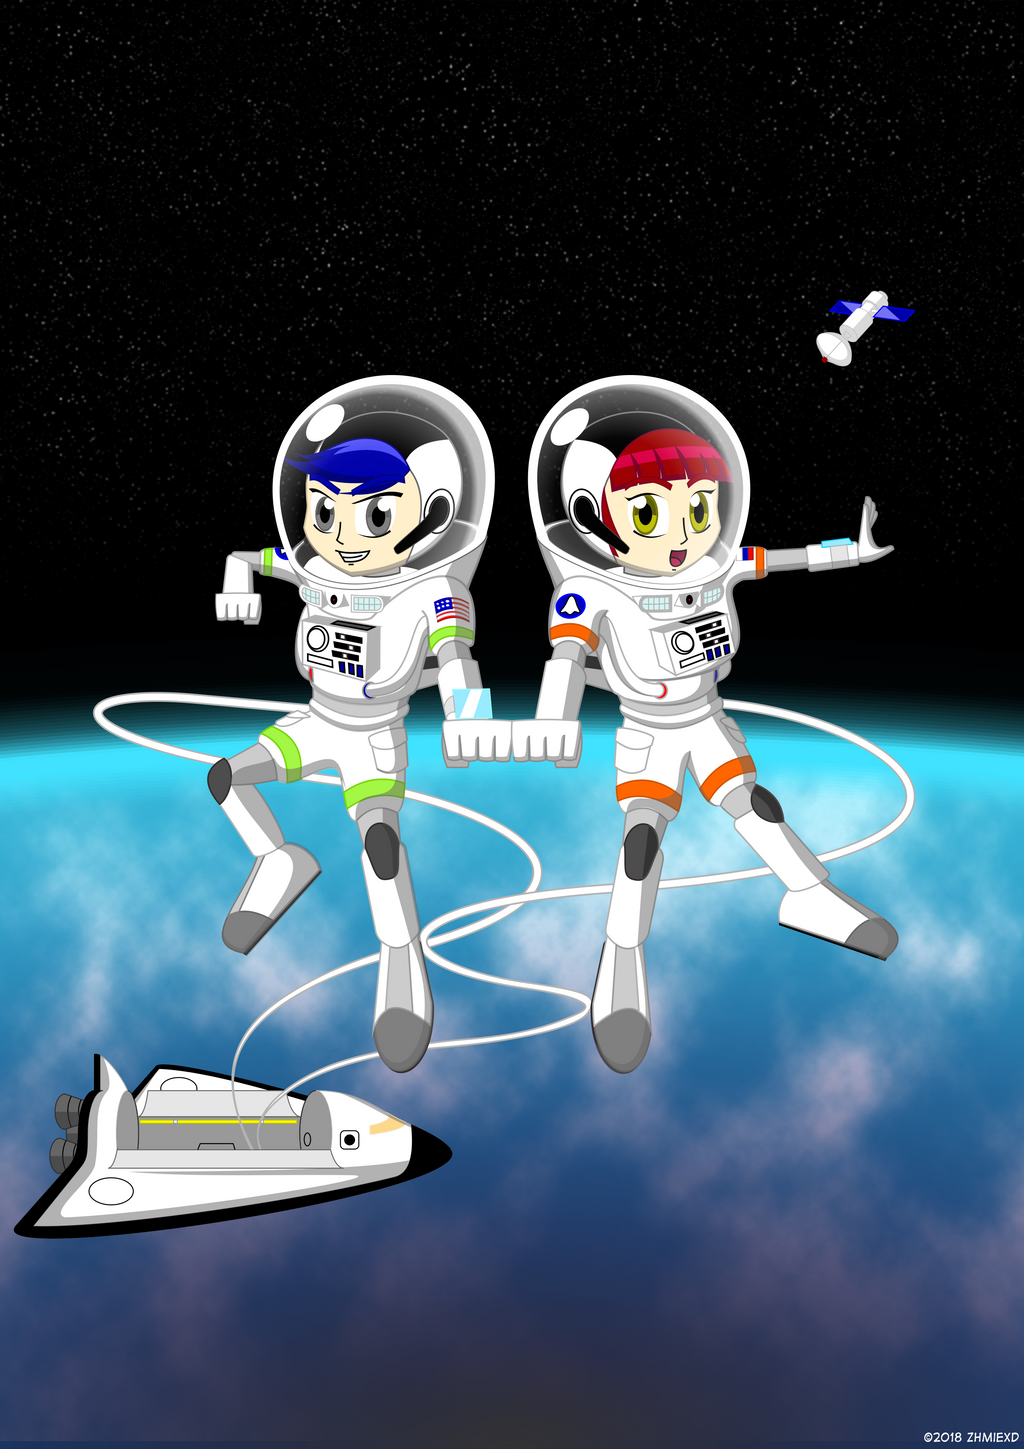 Jogar spaceman by spacemanjogo on DeviantArt